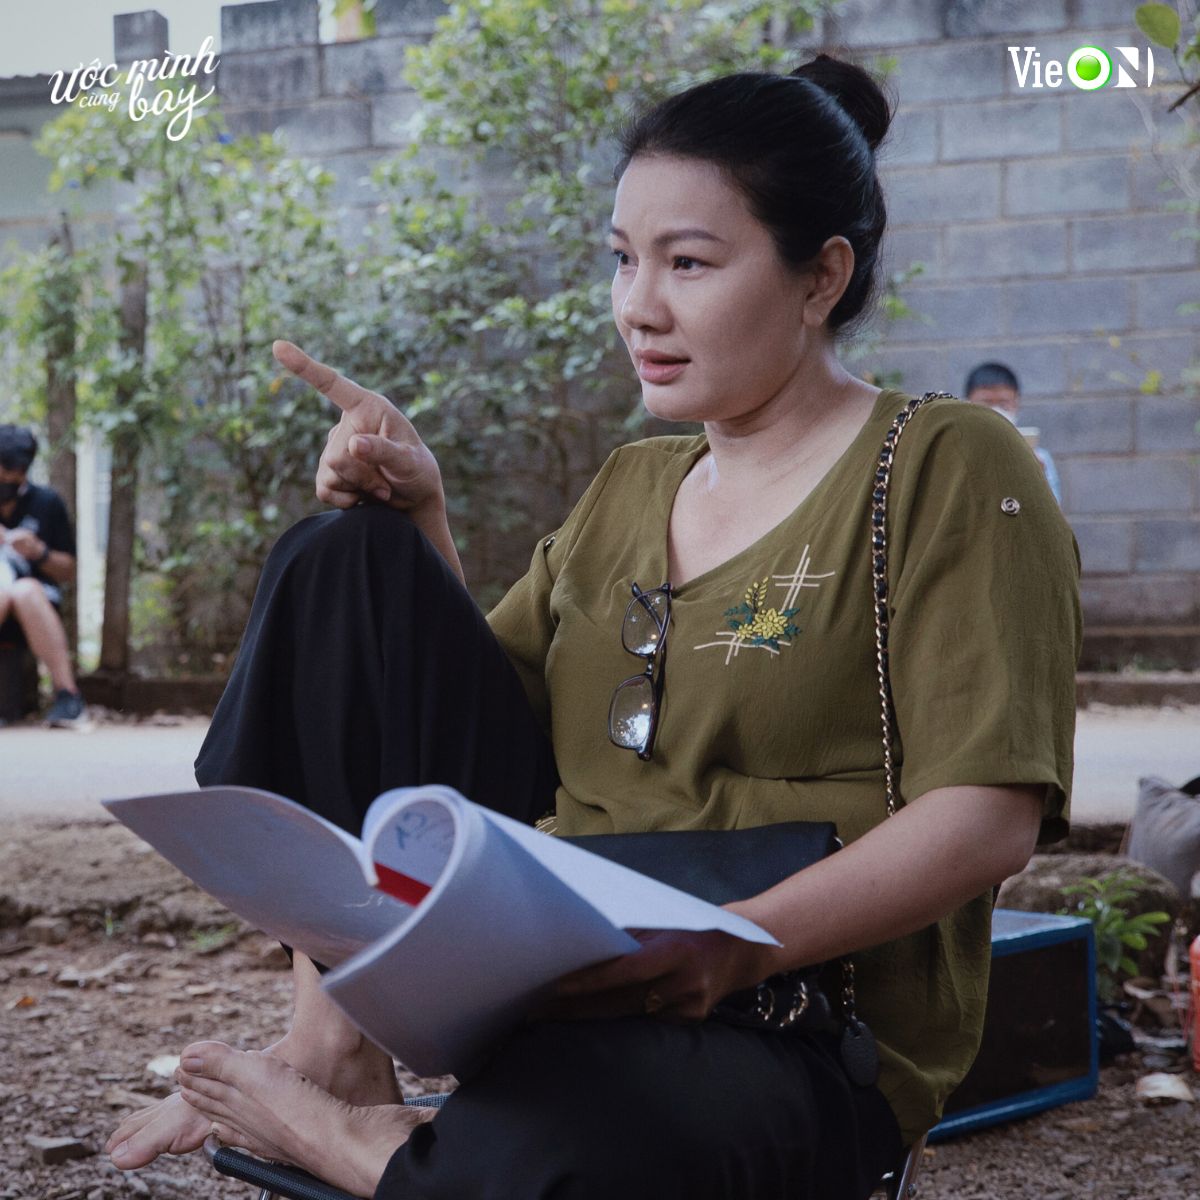 Lãnh Thanh tái hợp “tình cũ” Võ Điền Gia Huy trong phim “Ước Mình Cùng Bay” - ảnh 2